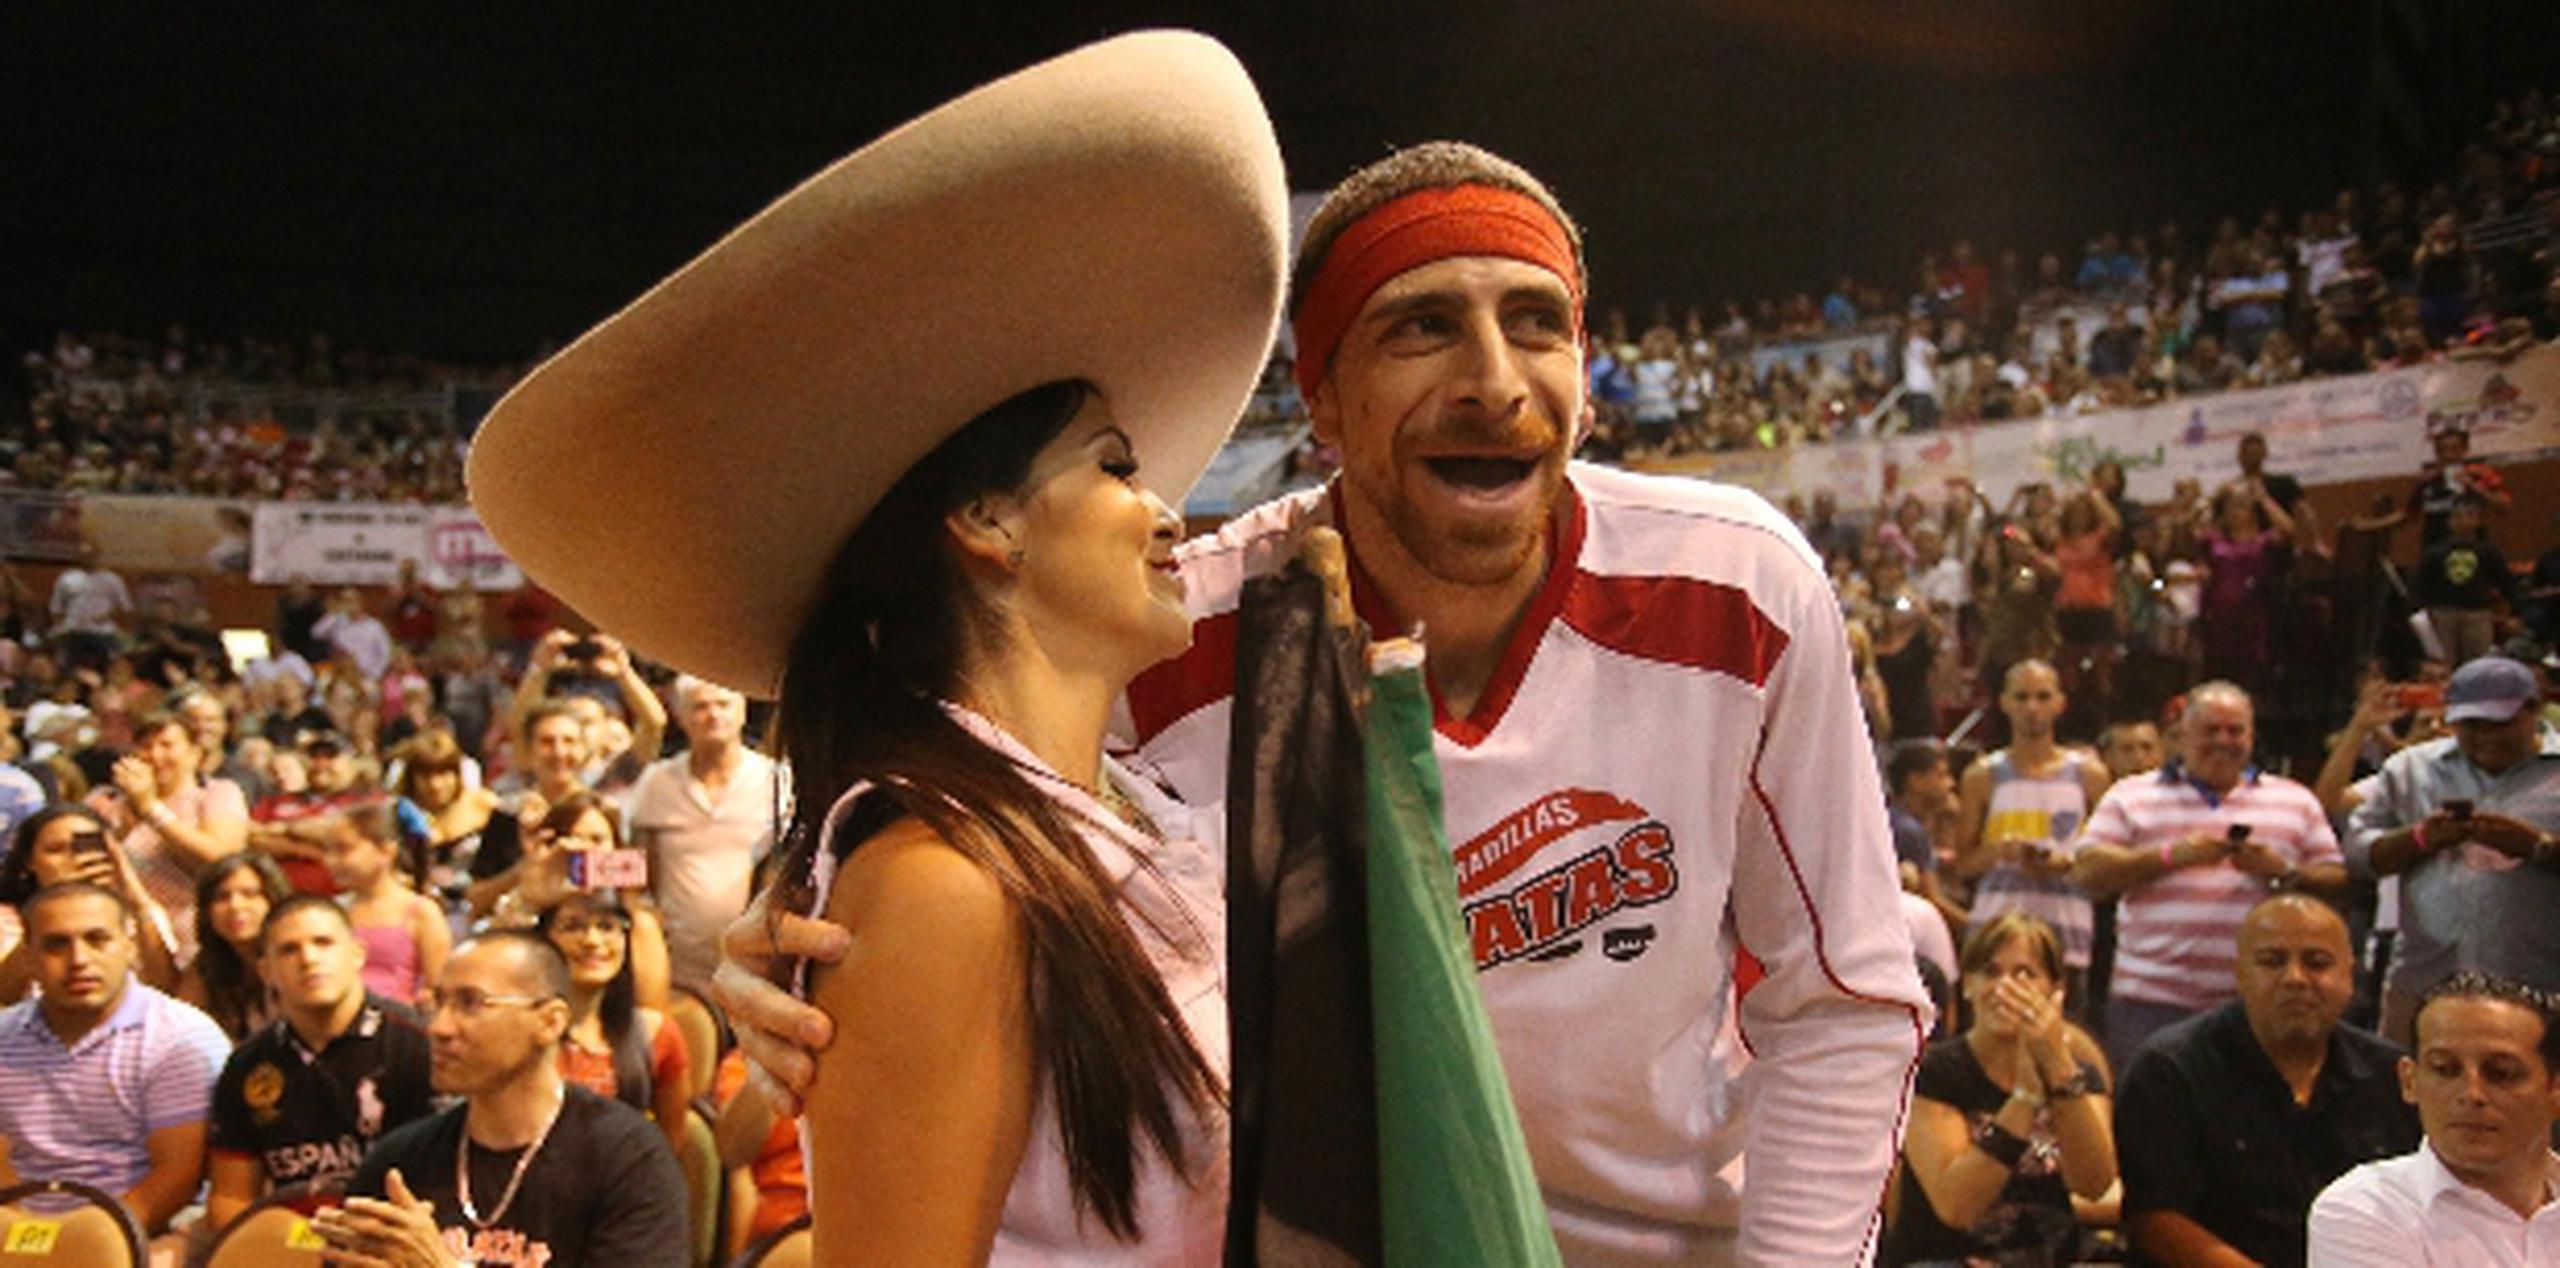 El mexicano Lorenzo Mata comparte con su esposa Cintya antes de uno de los partidos de la serie final del BSN en el Coliseo Raymond Dalmau de Quebradillas. (lino.prieto@gfrmedia.com)